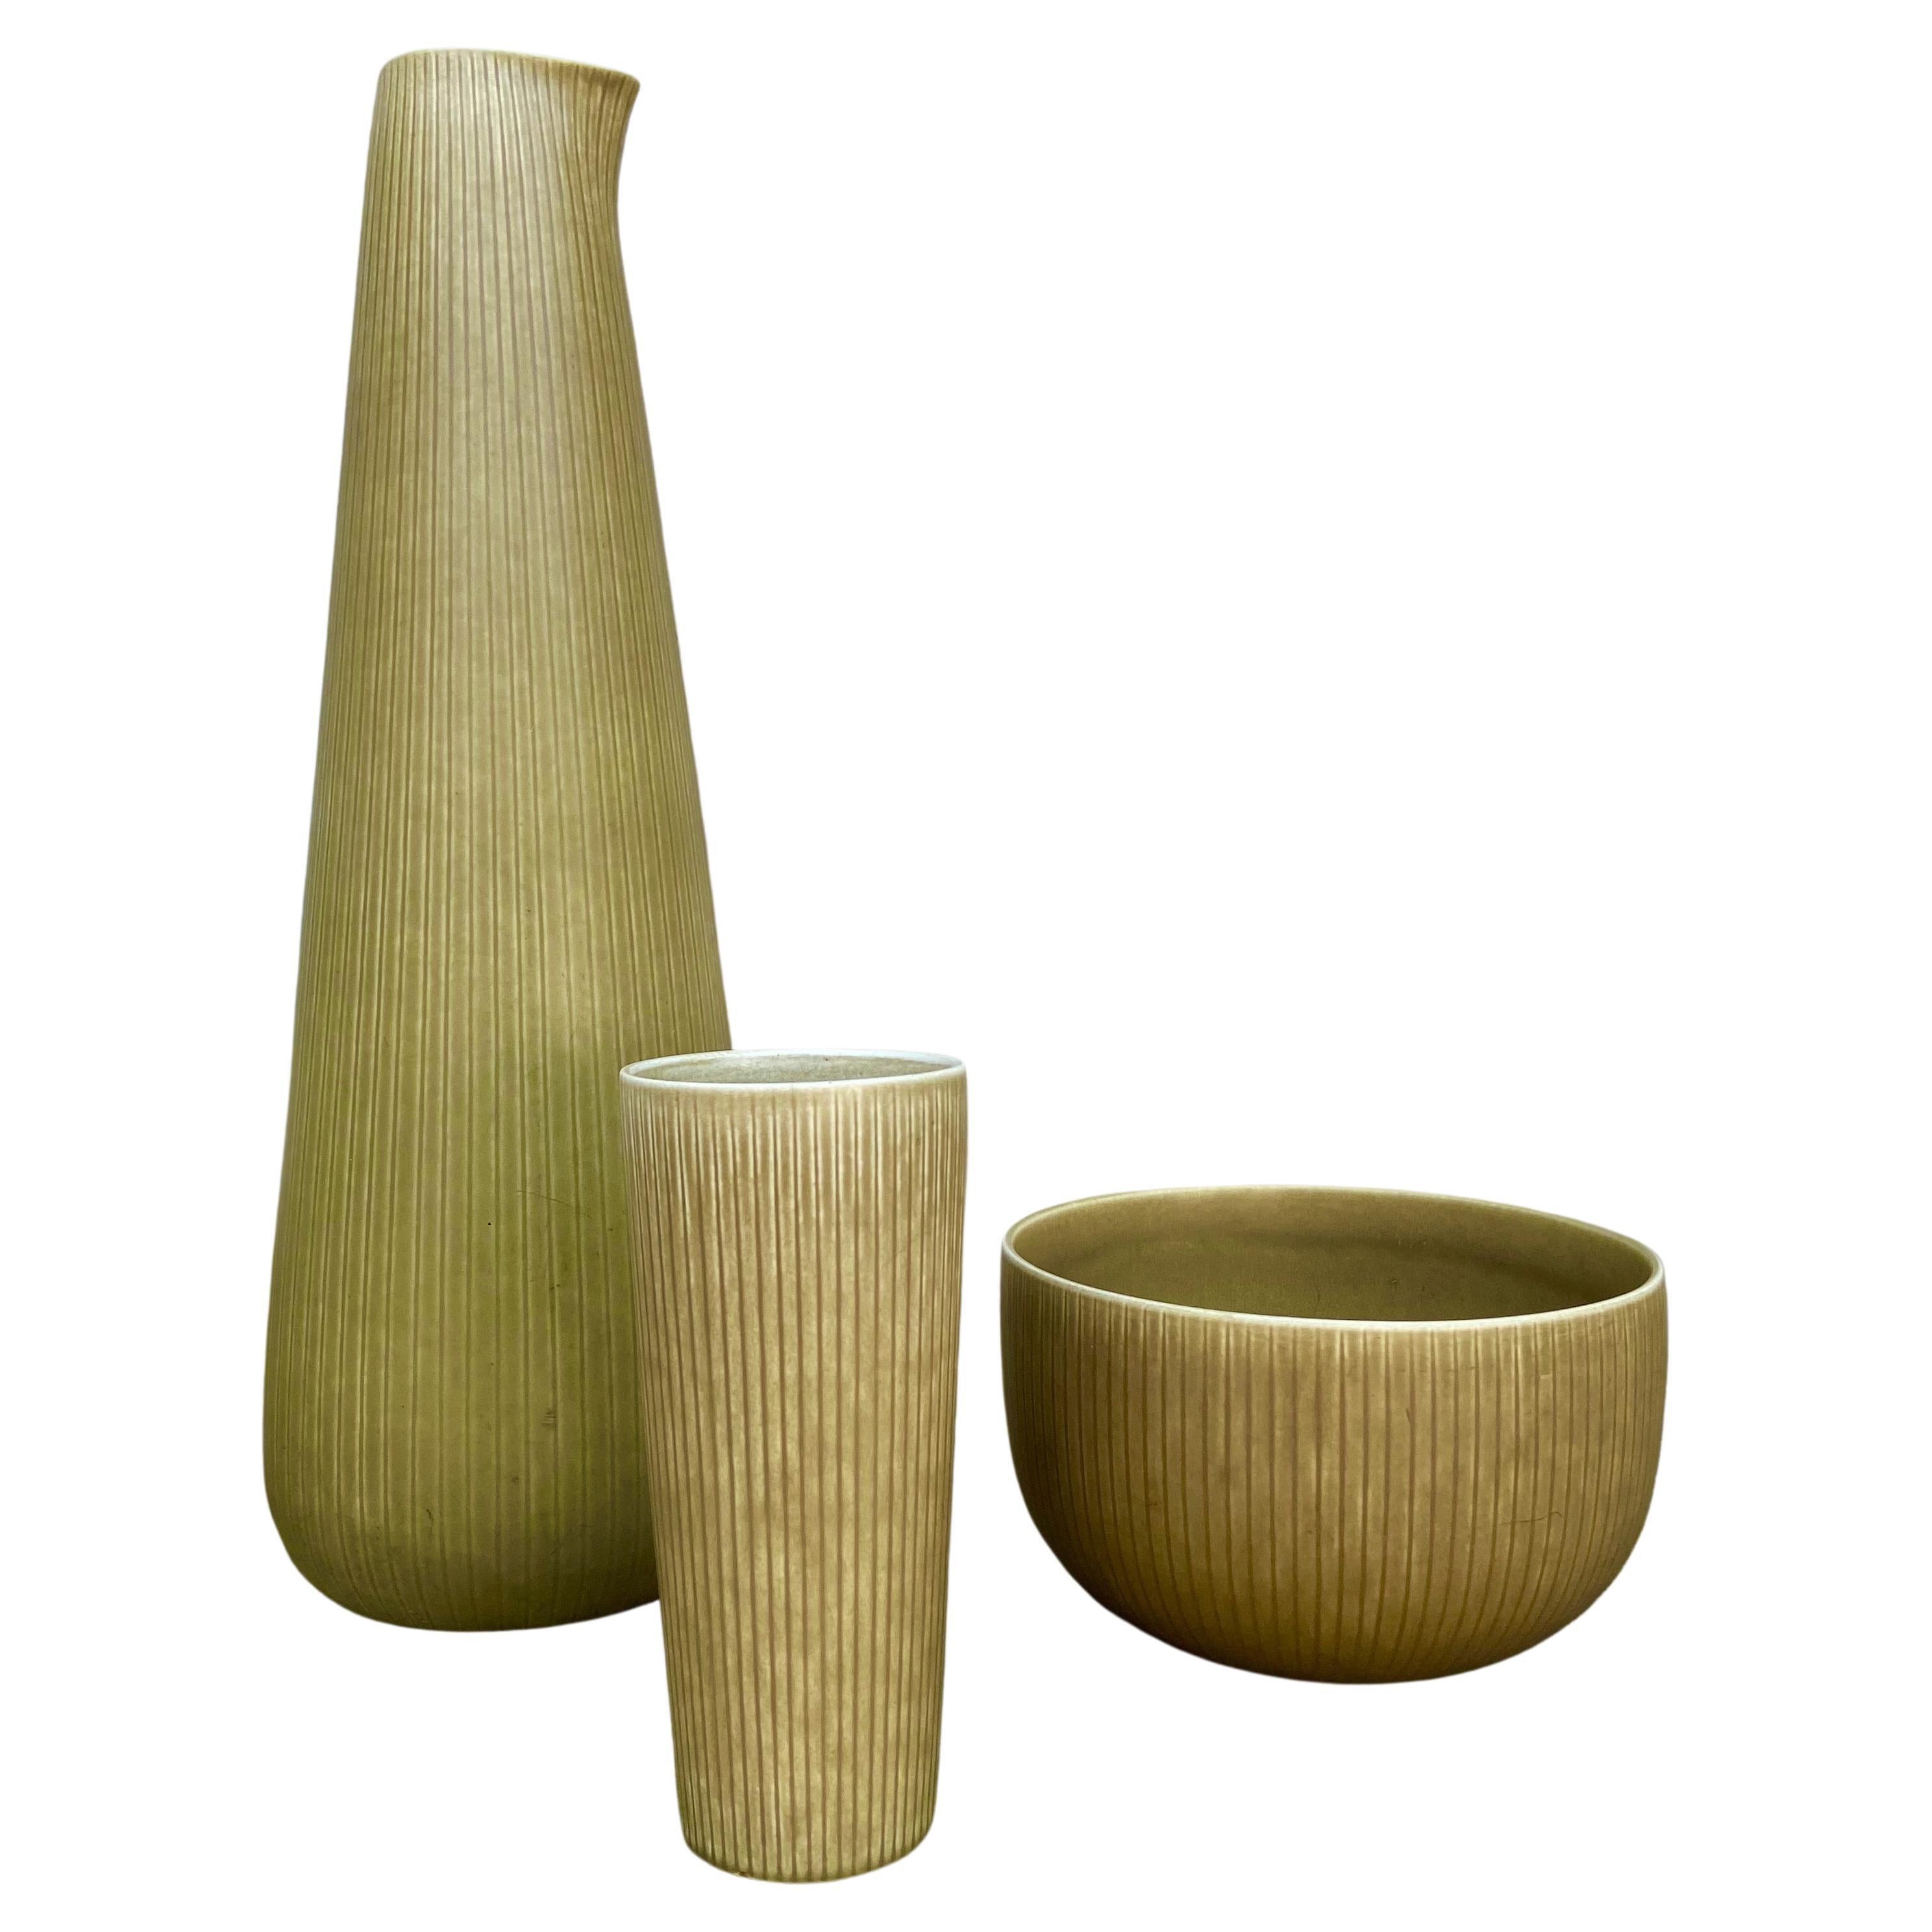 Satz von 3 Rörstrand Ritzi Keramik Vasen und Schale von Gunnar Nylund Schweden 1950er Jahre